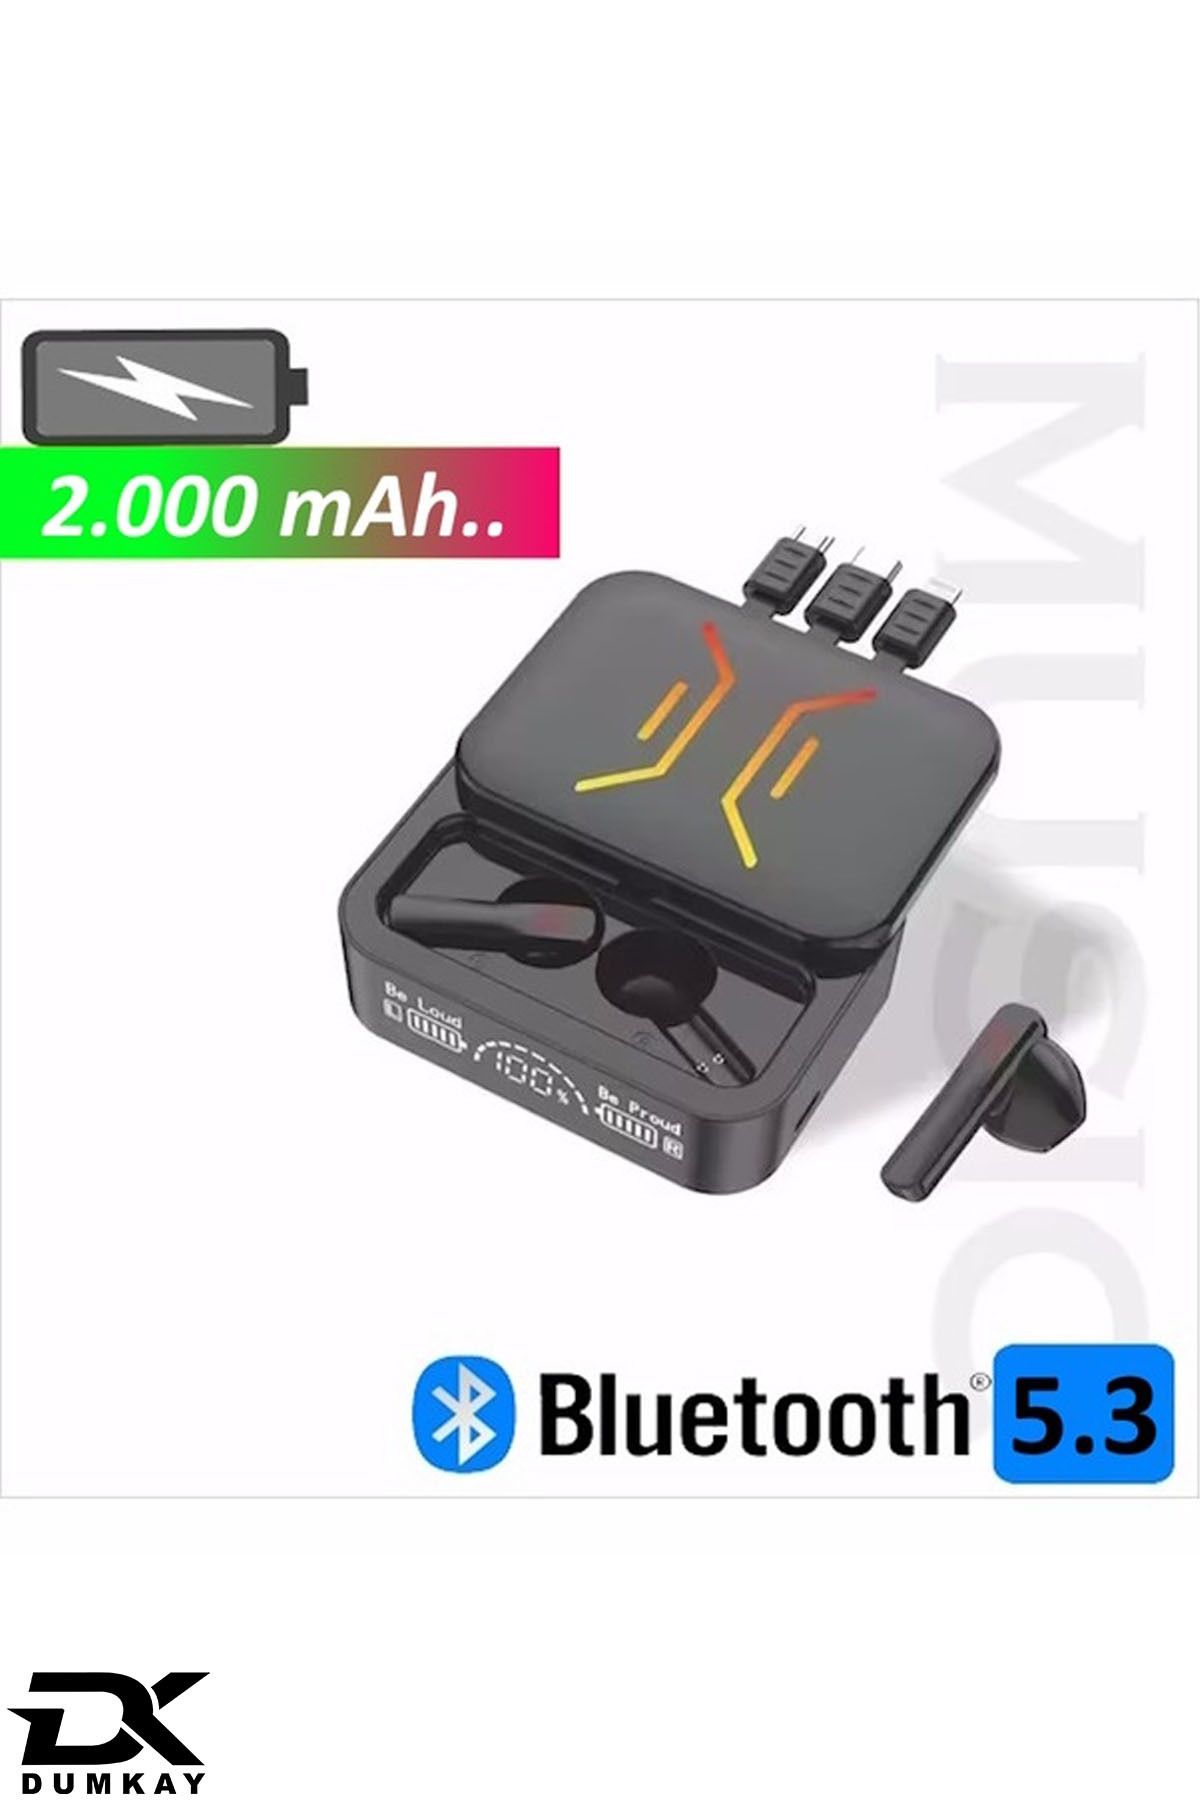 DUMKAY M850 Bluetooth Stereo Kulaklık: Sesinizi Yükseltin, Stilinizi Yansıtın